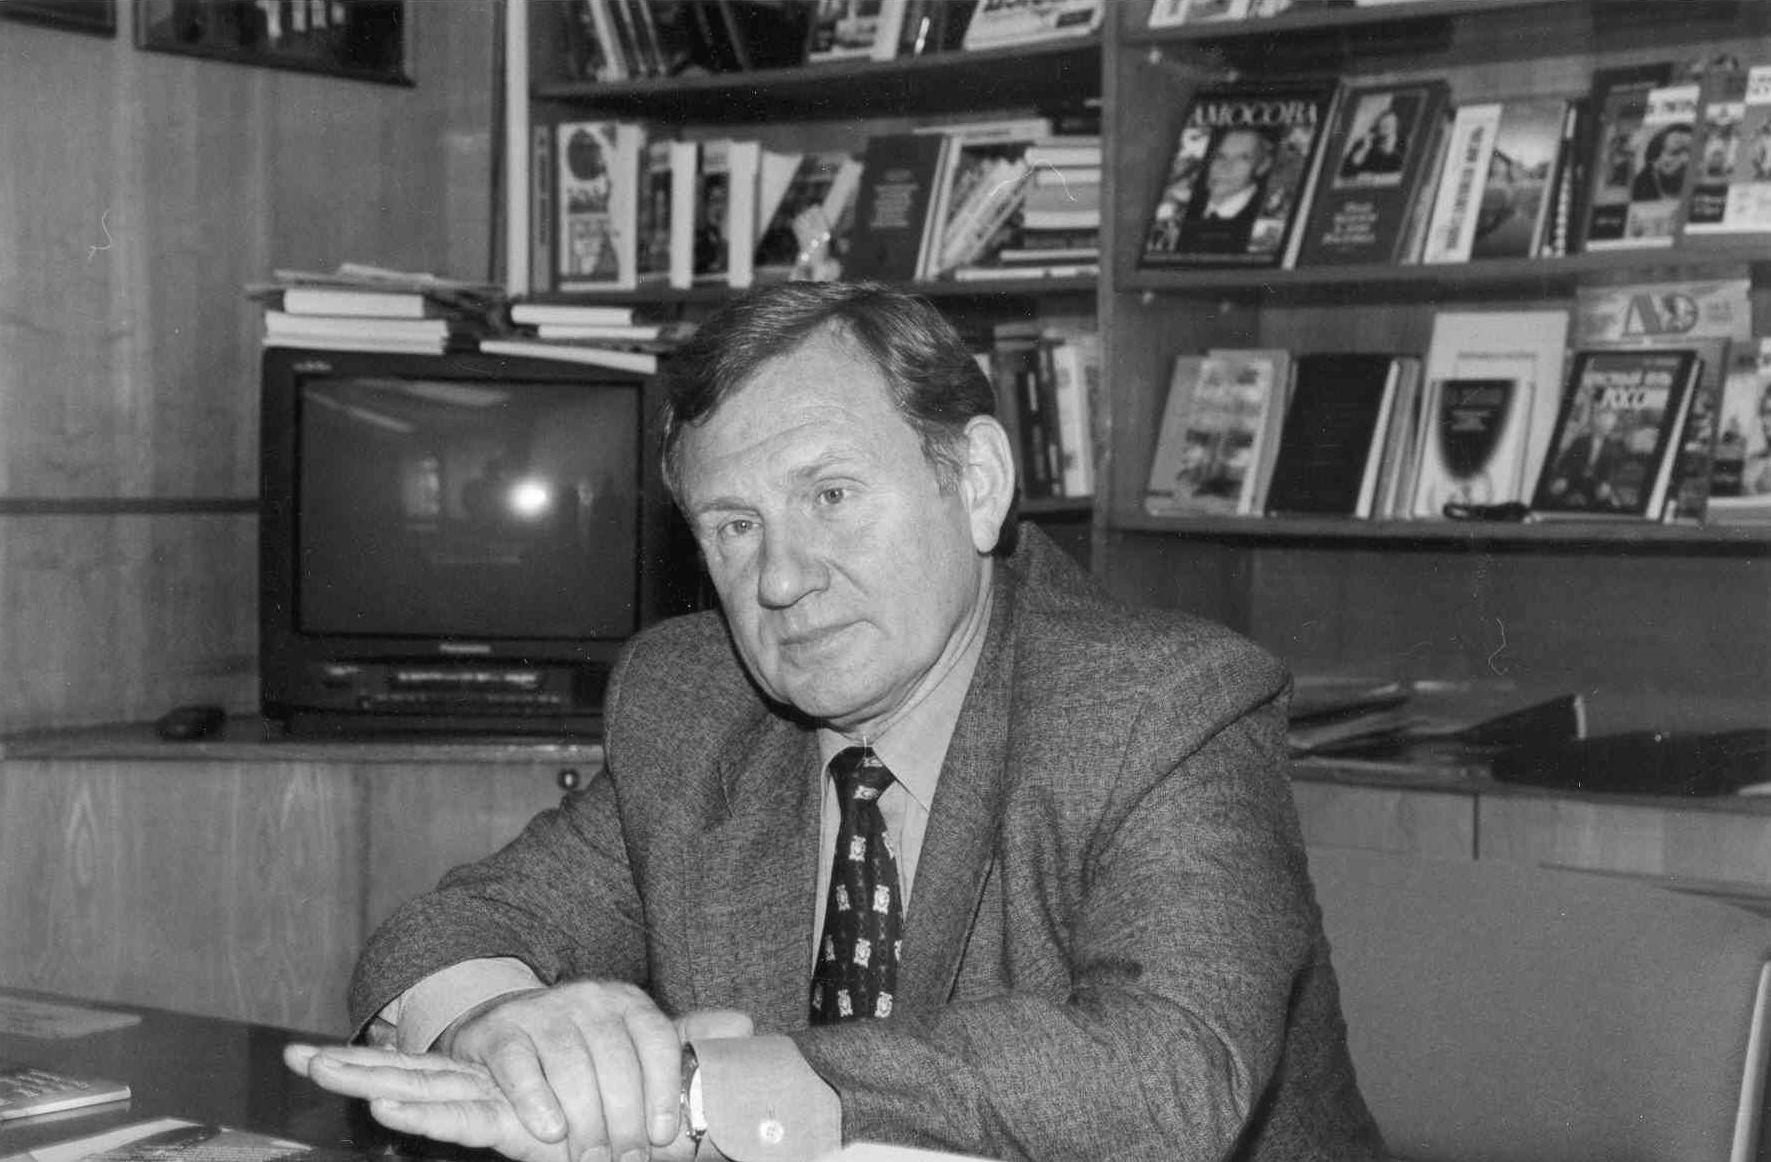 Валентин Федорович Юркин (18 апреля 1940 — 3 мая 2022) — с 1985 года директор издательства «Молодая гвардия», с 1992 года — генеральный директор «Молодой гвардии» / gvardiya.ru